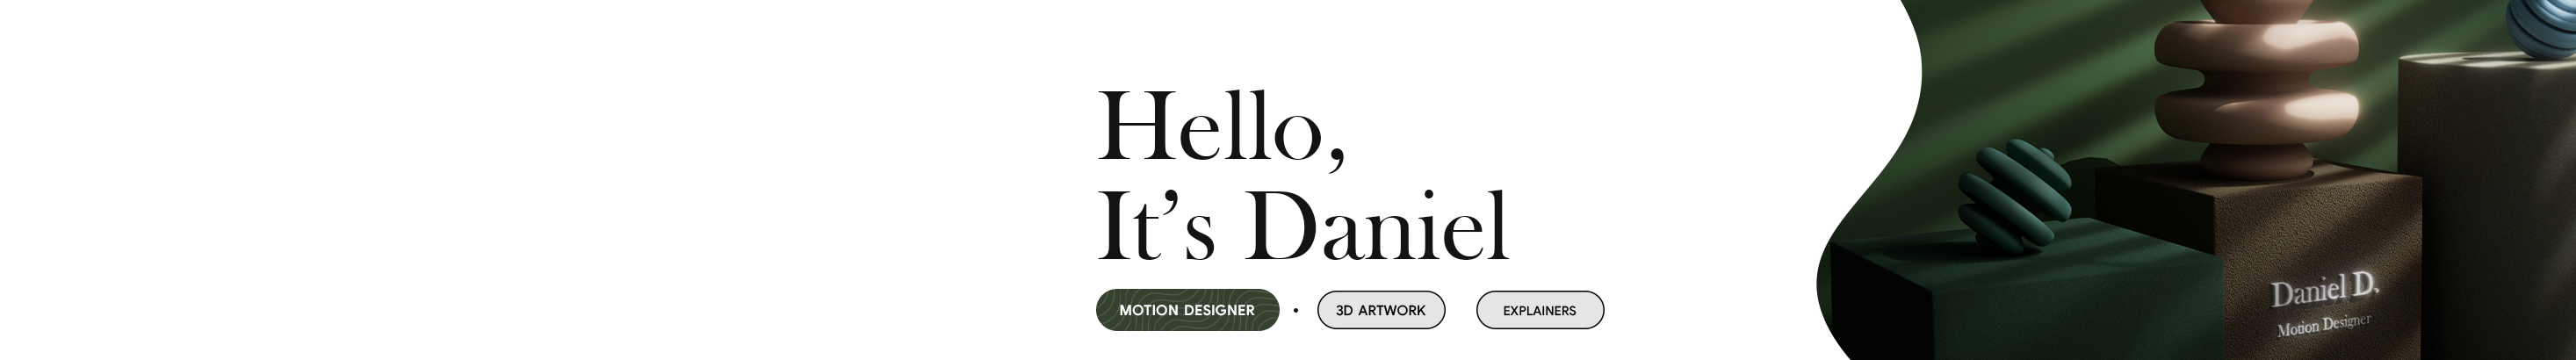 Daniel Denysov's profile banner